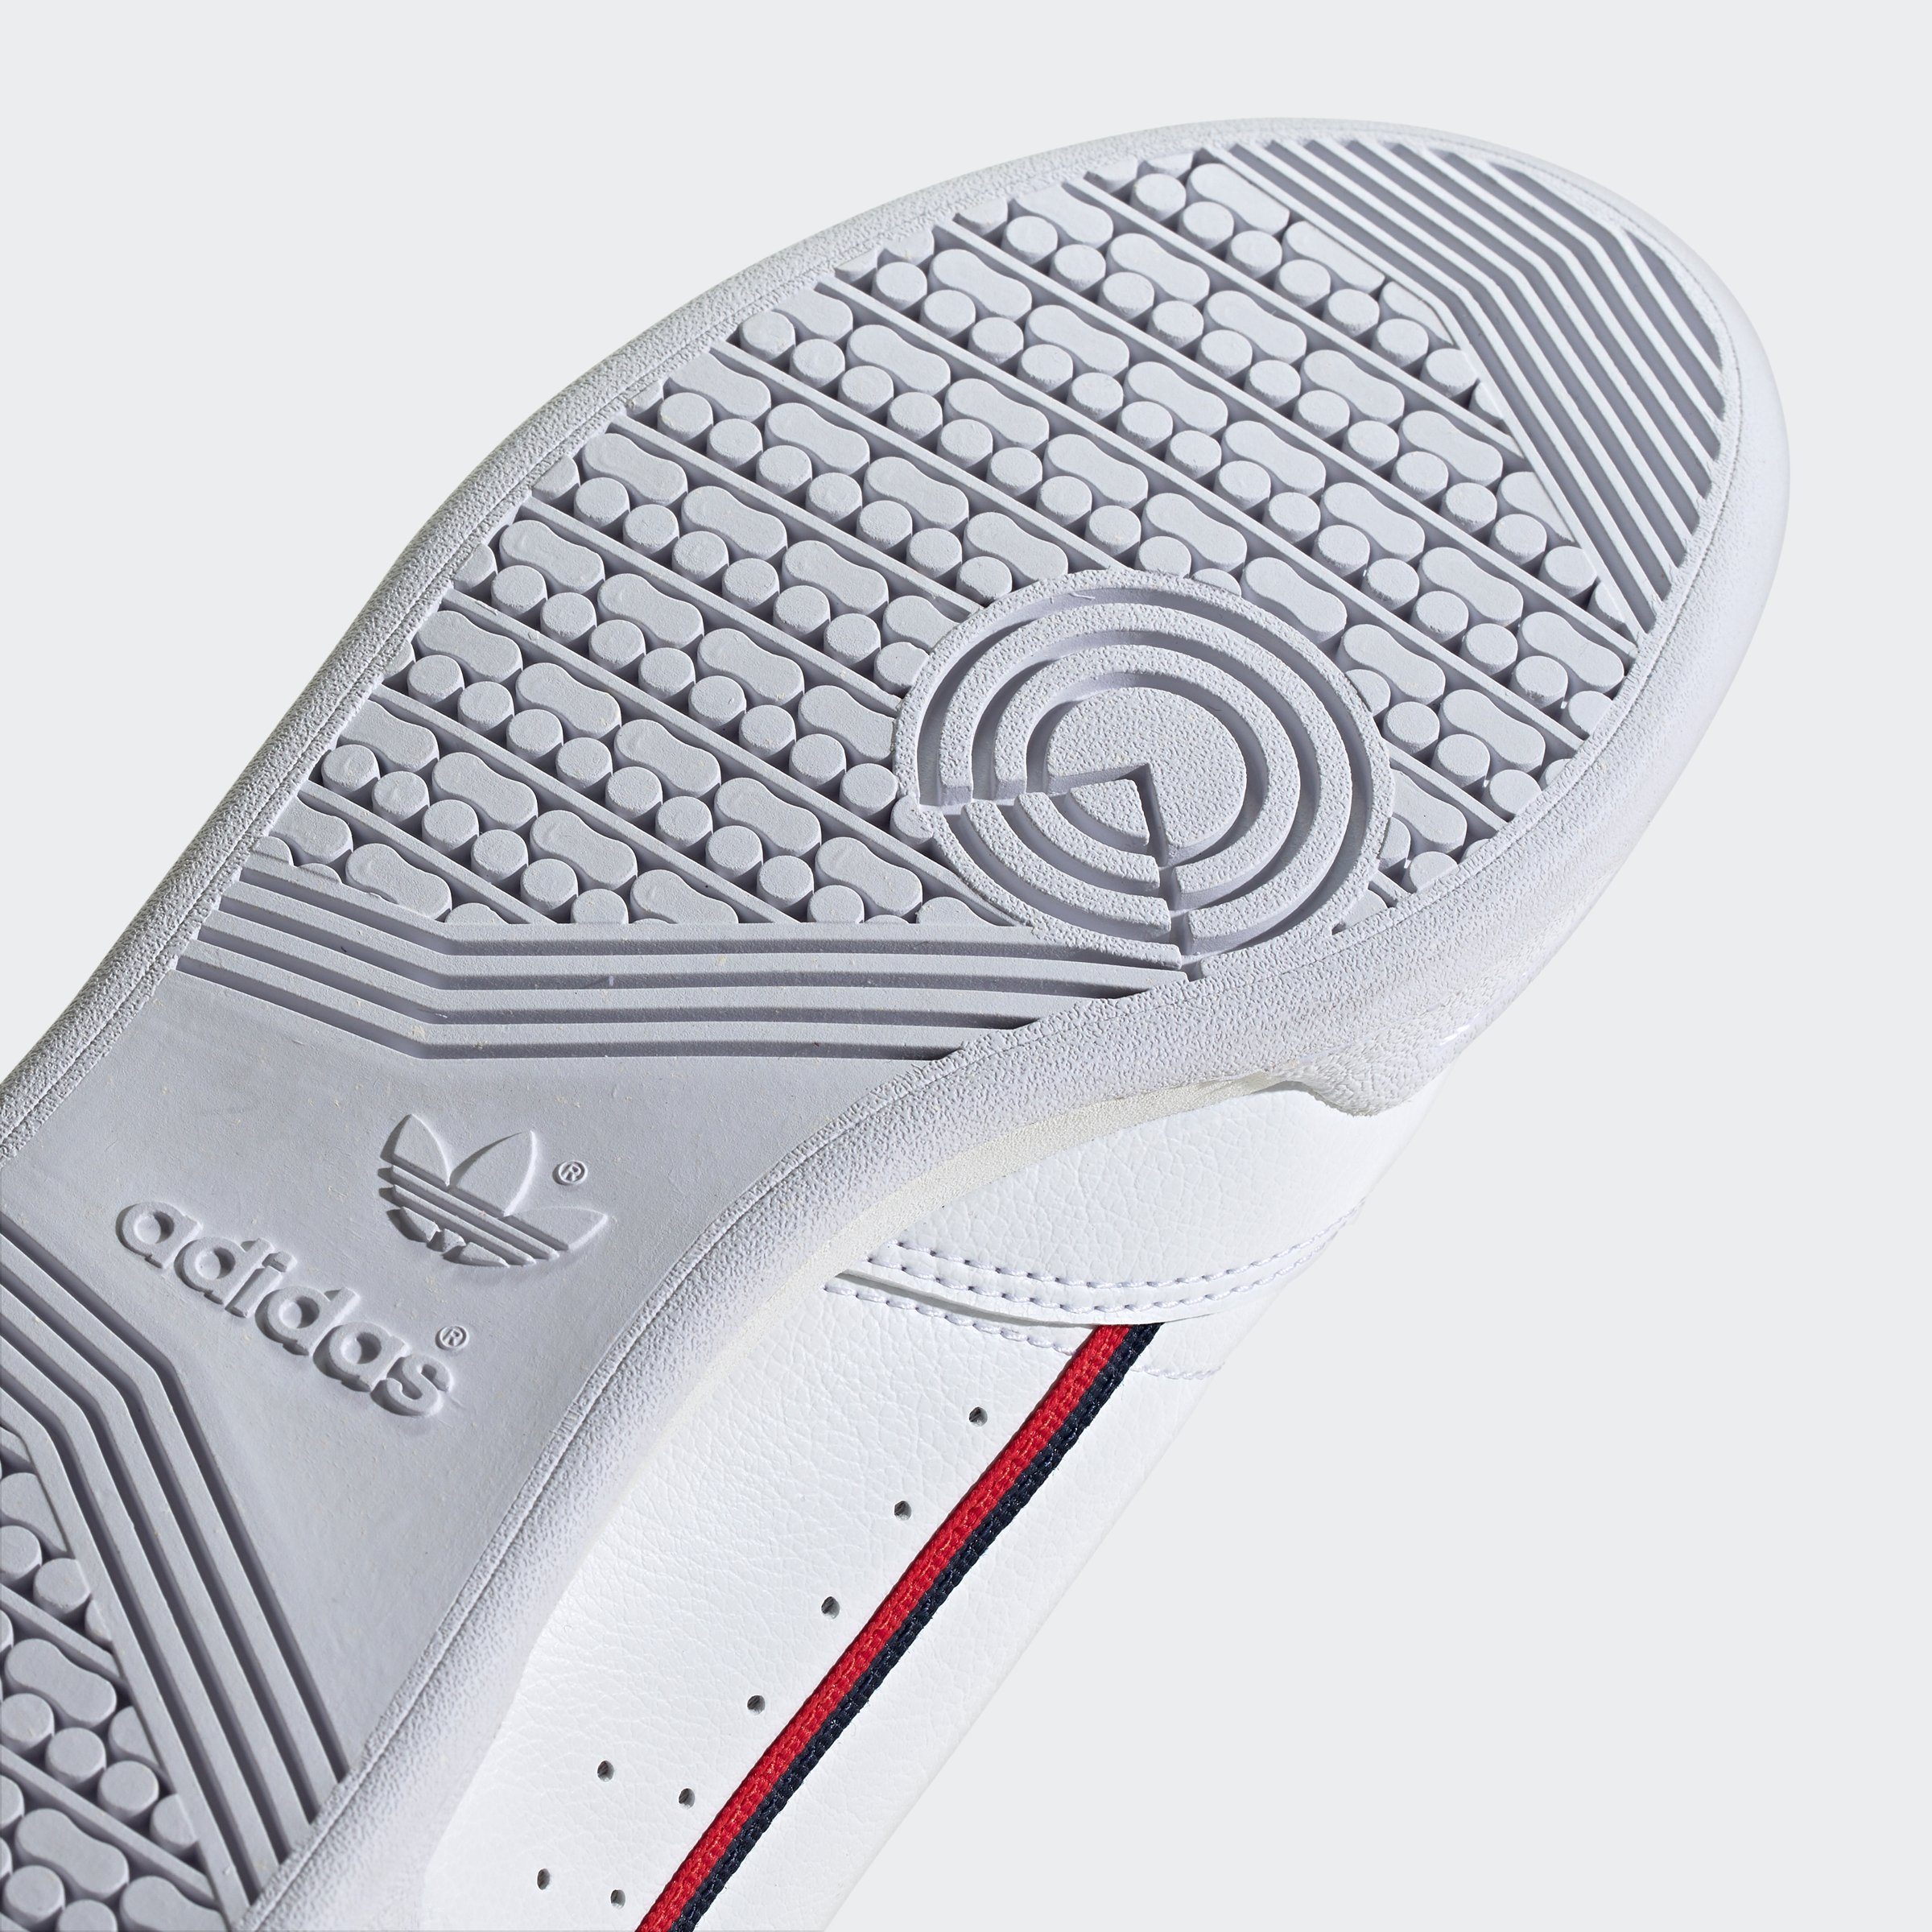 FTWWHT-CONAVY-SCARLE Originals adidas Sneaker 80 CONTINENTAL VEGAN